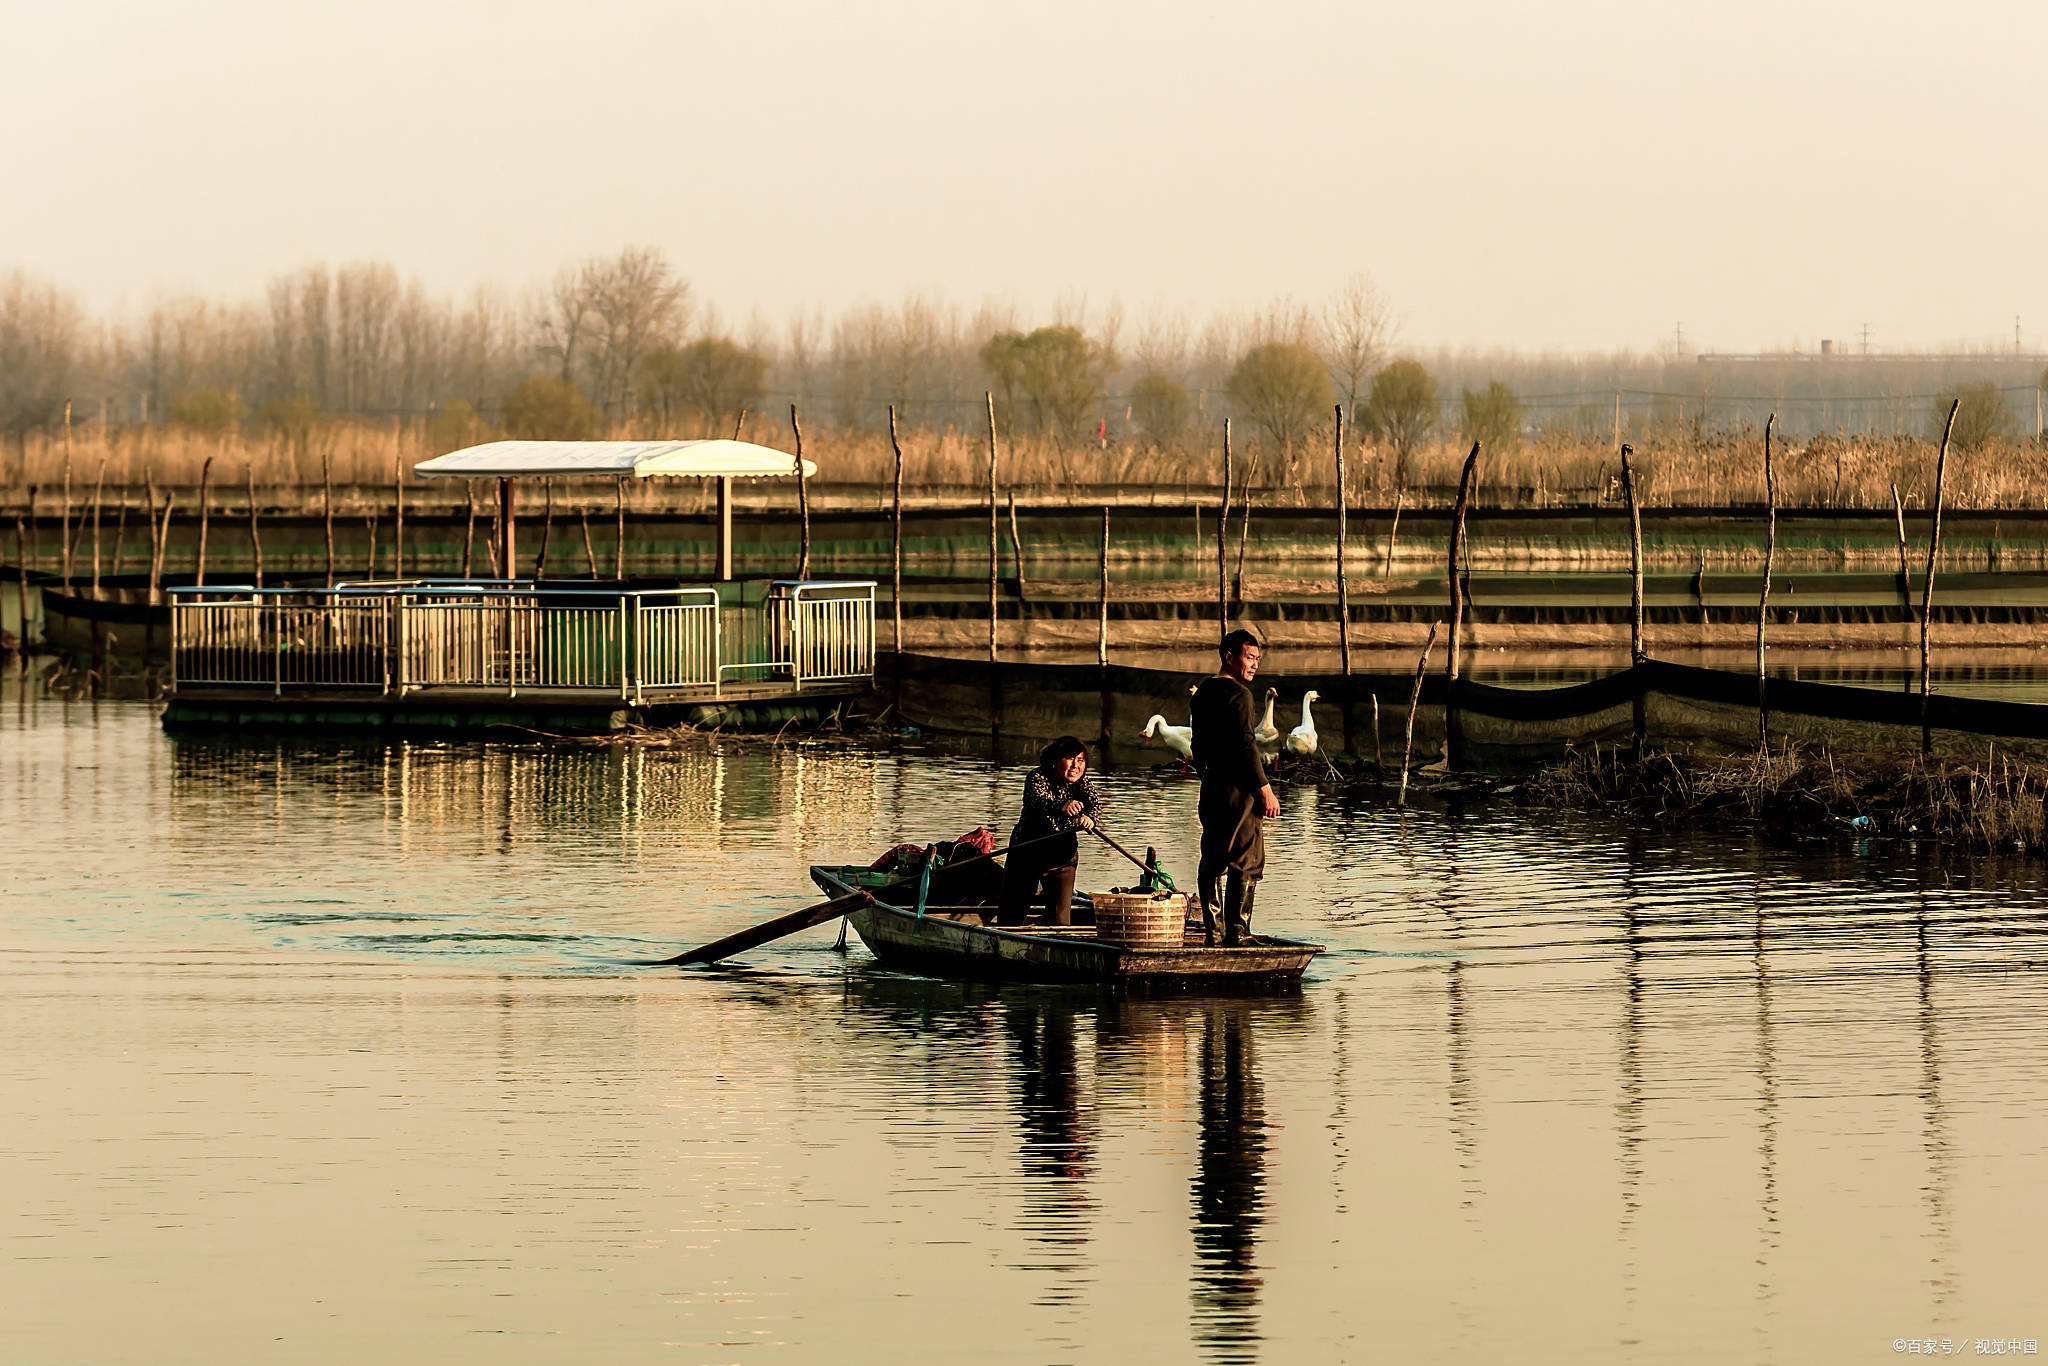 姜堰溱湖风景区门票图片